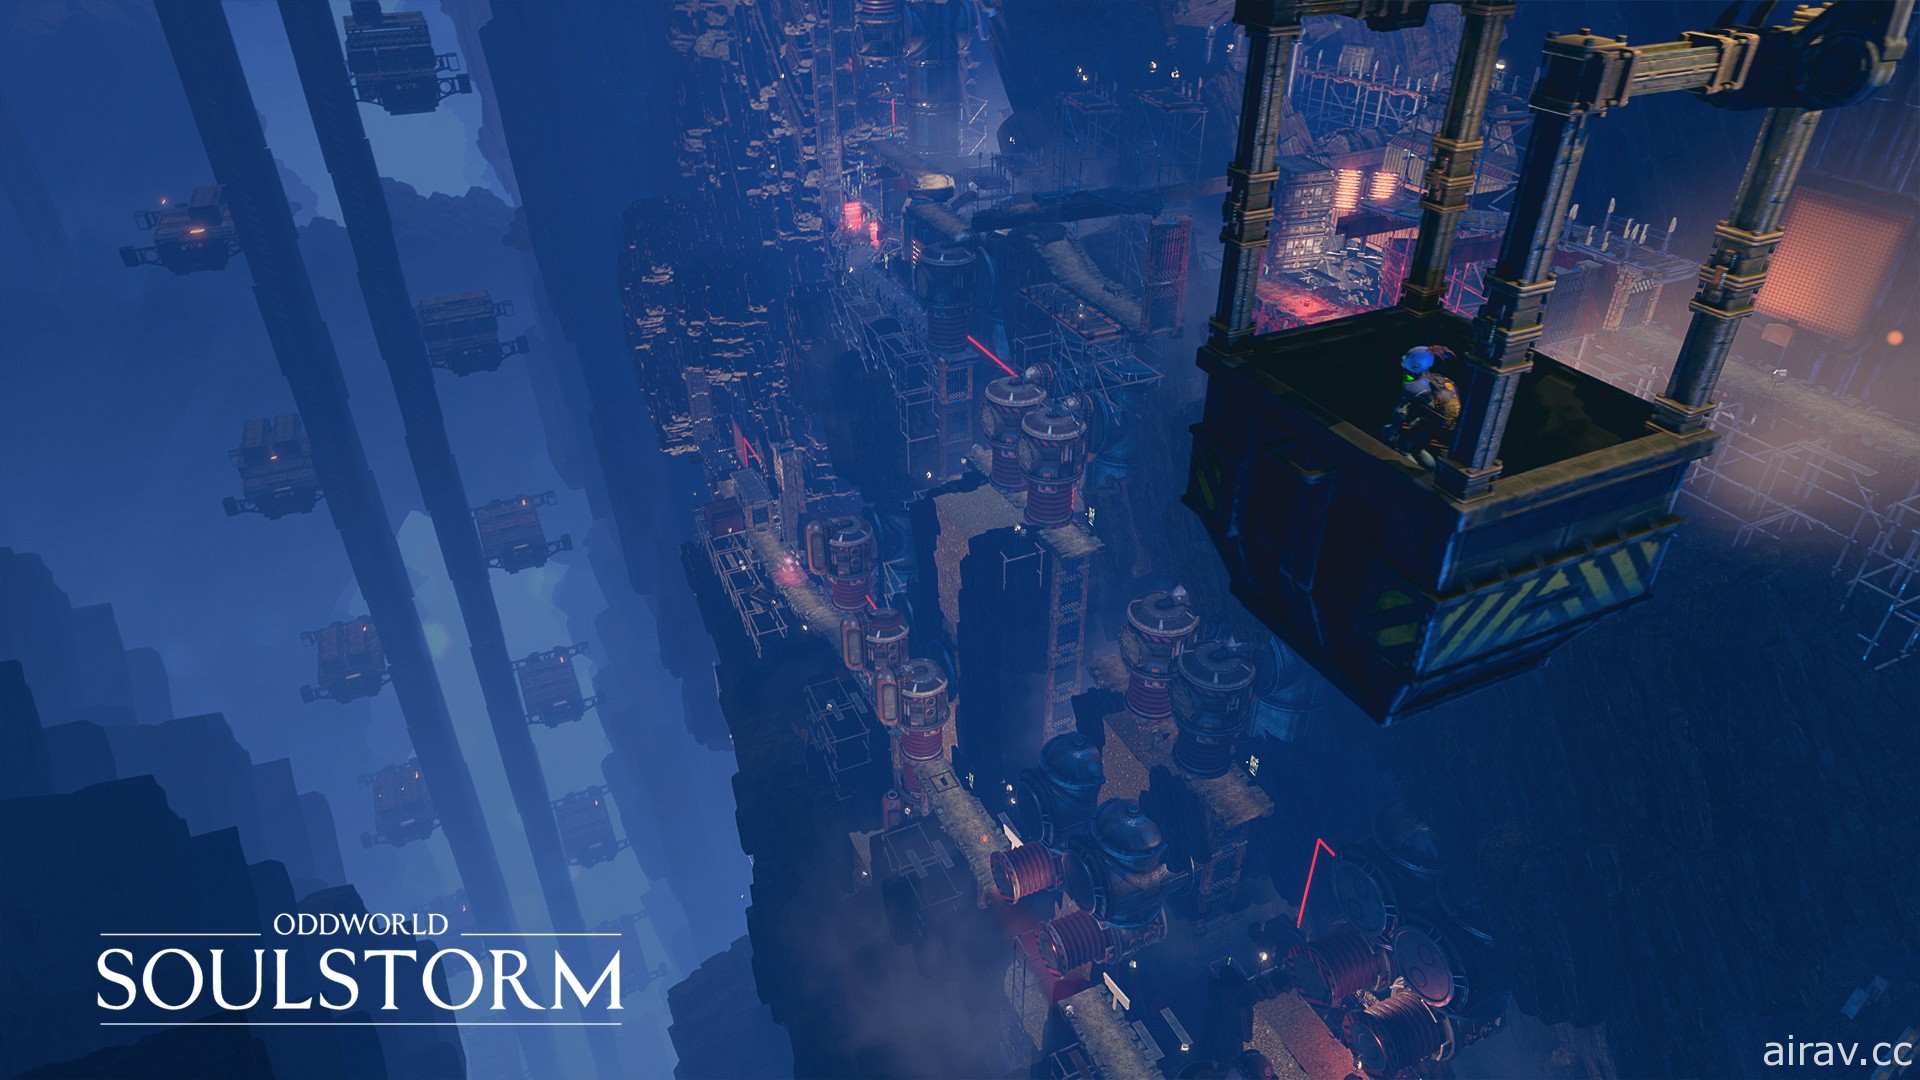 《奇异世界：灵魂风暴》释出 PS5 游玩展示影片 跟着平凡主角“Abe”挺身起义